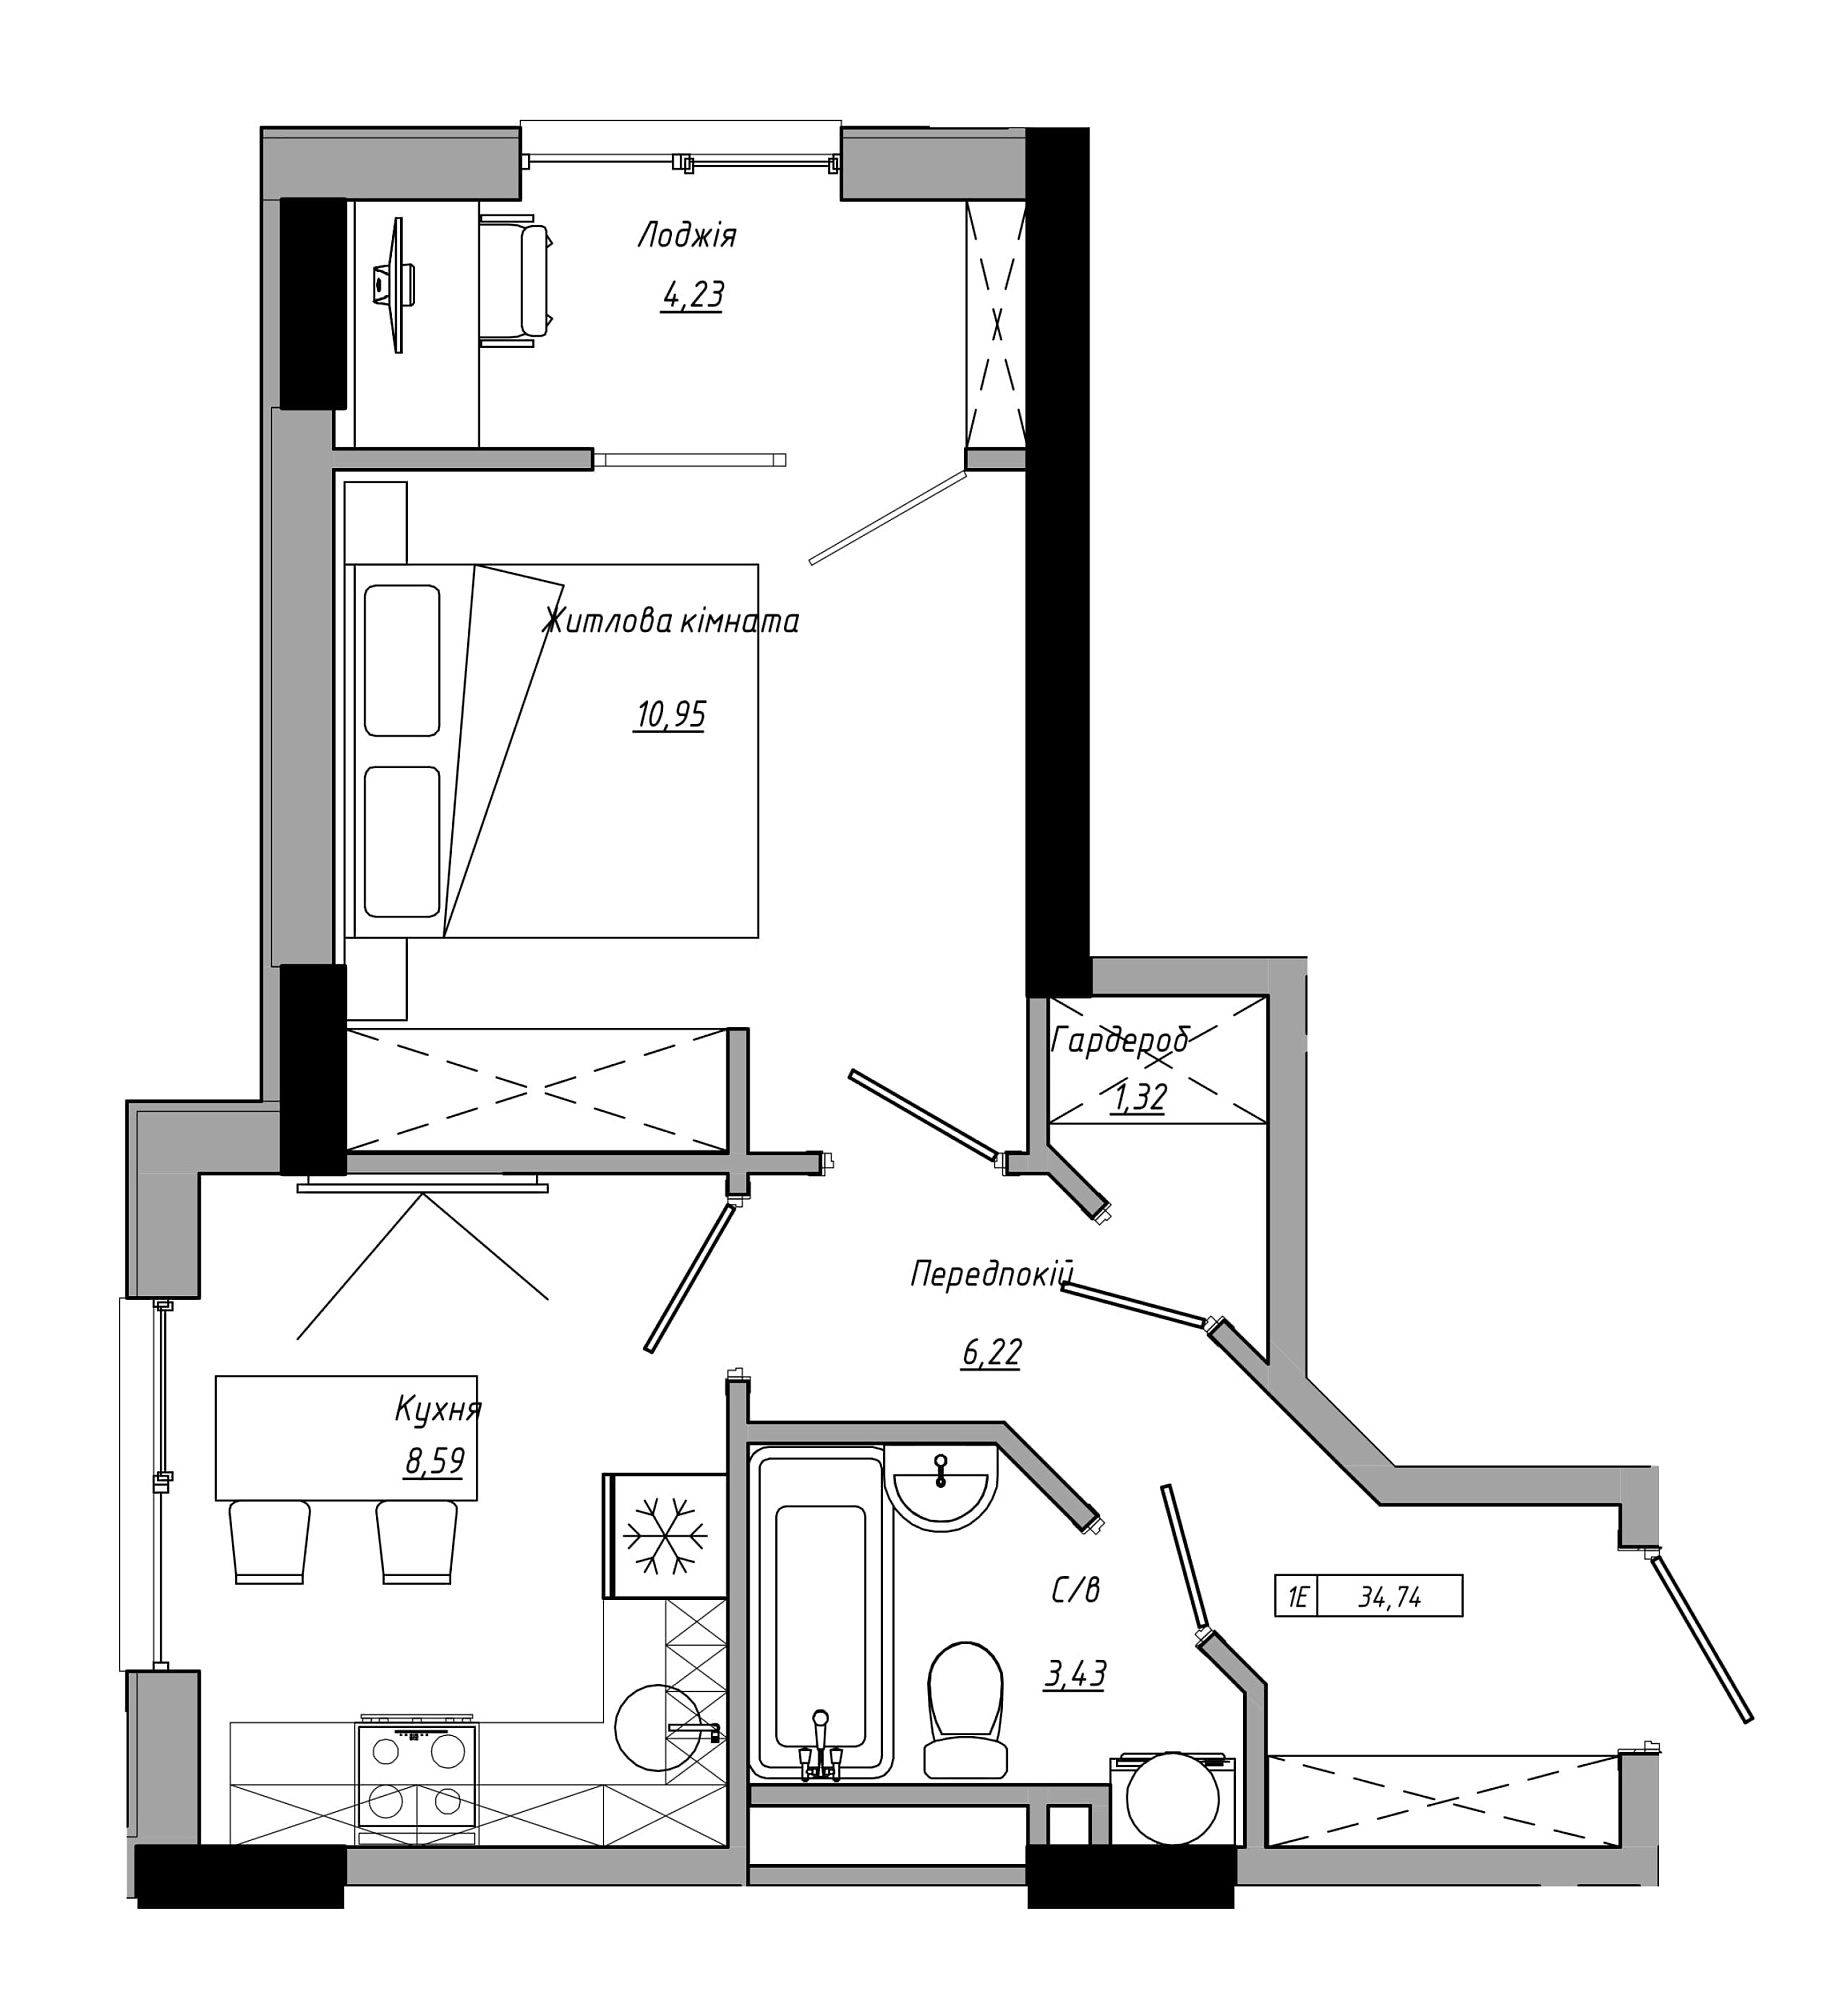 Планування 1-к квартира площею 34.74м2, AB-21-14/00109.